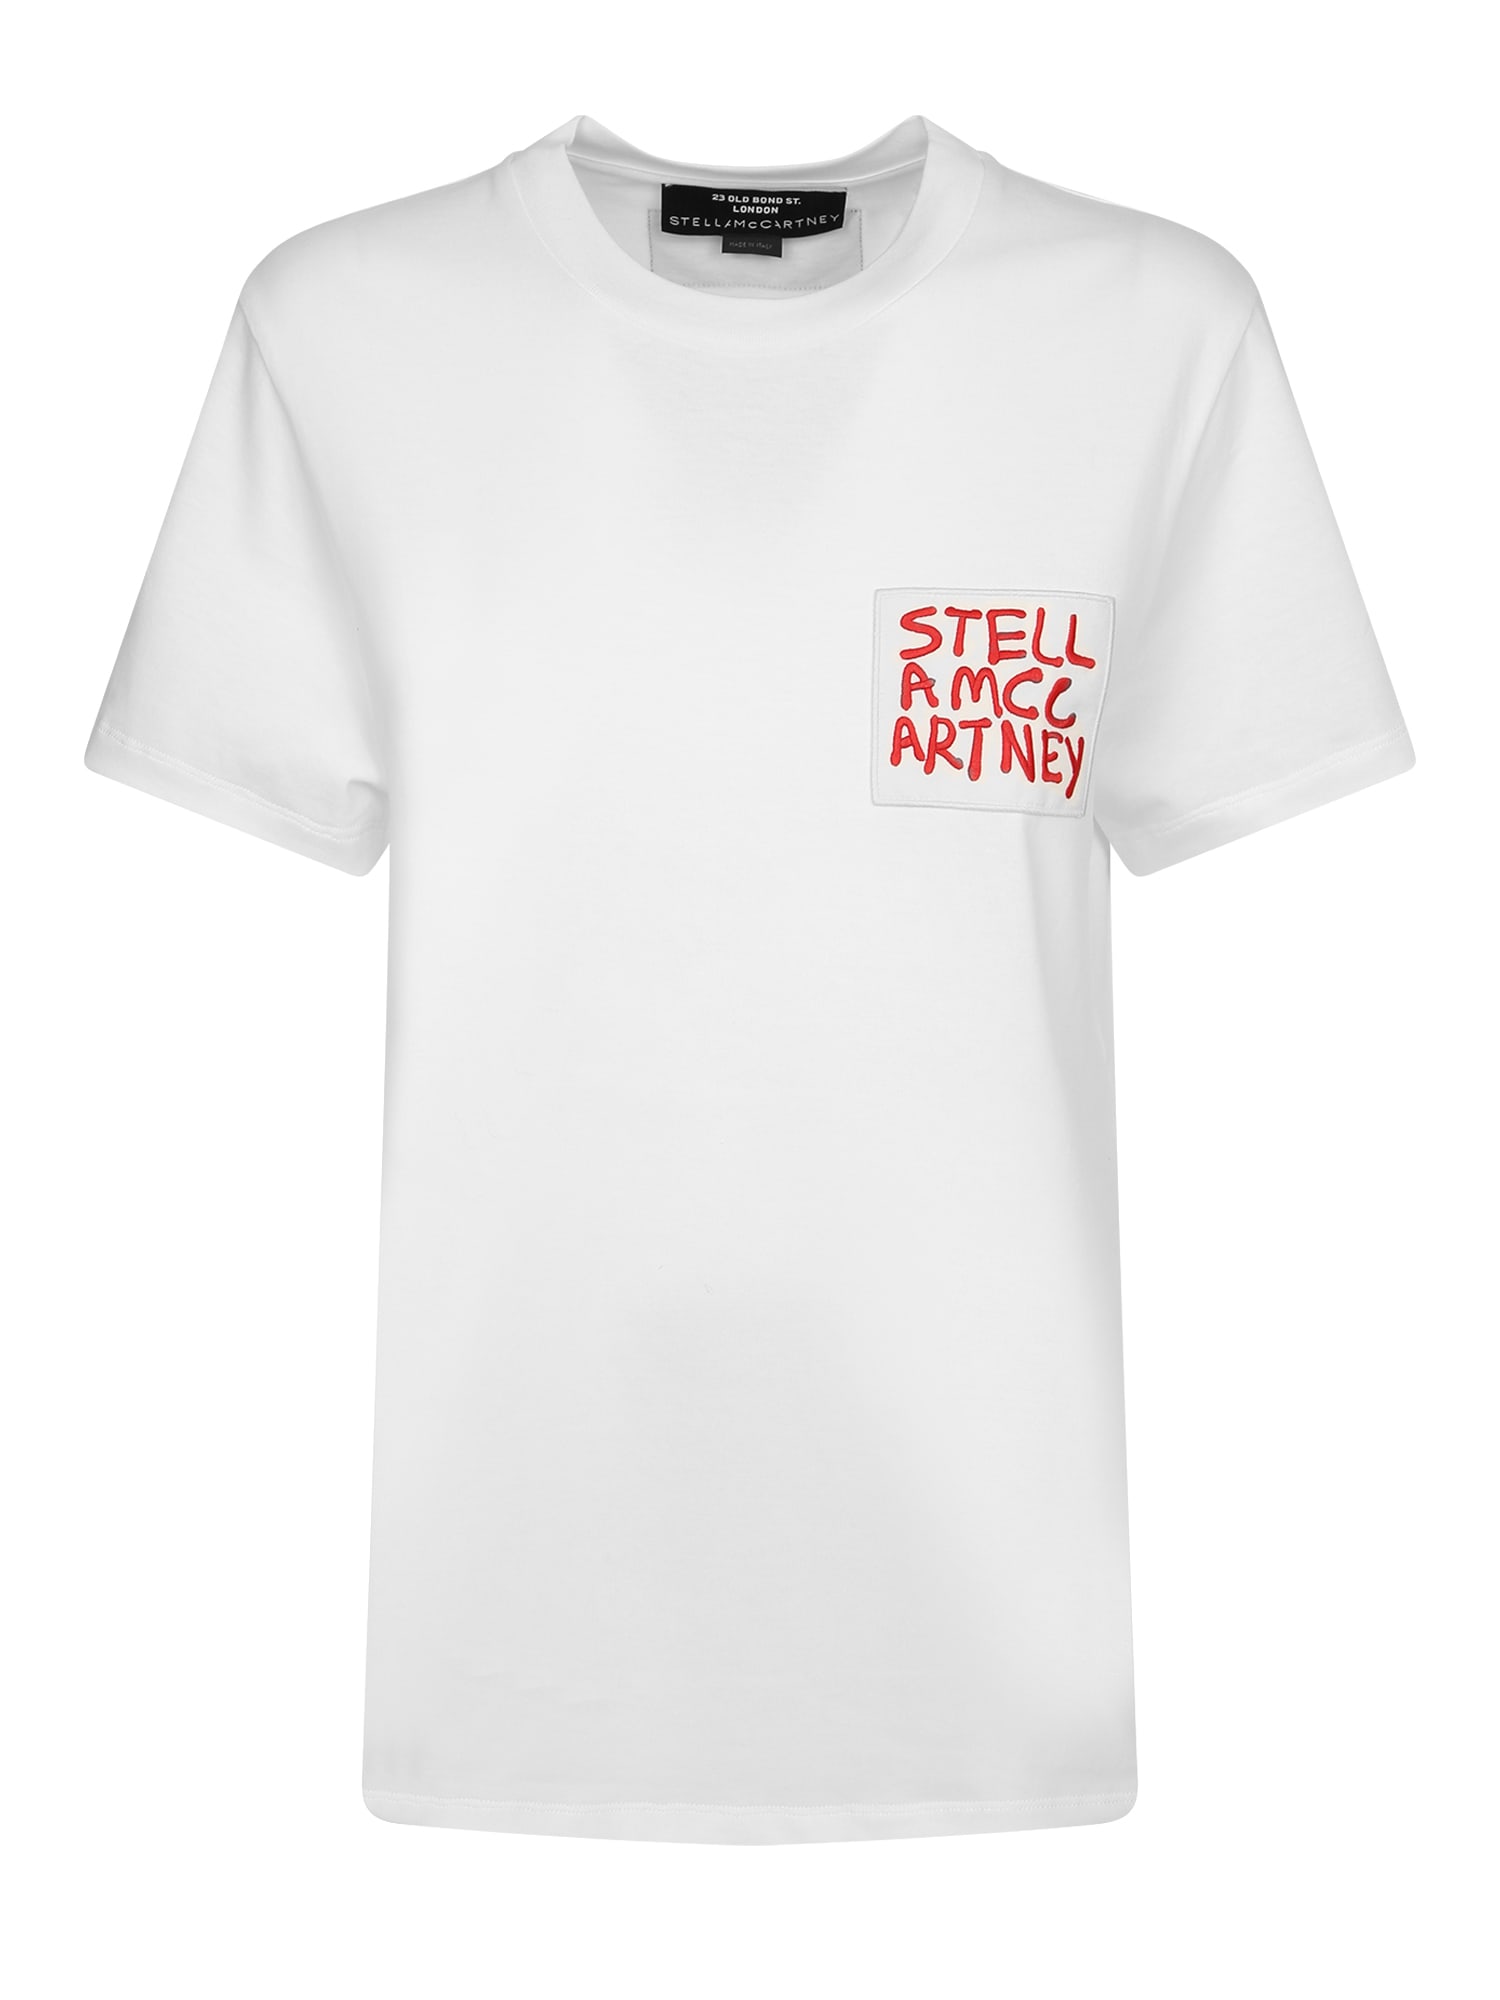 Stella McCartney T-shirt Spray Logo Bianco